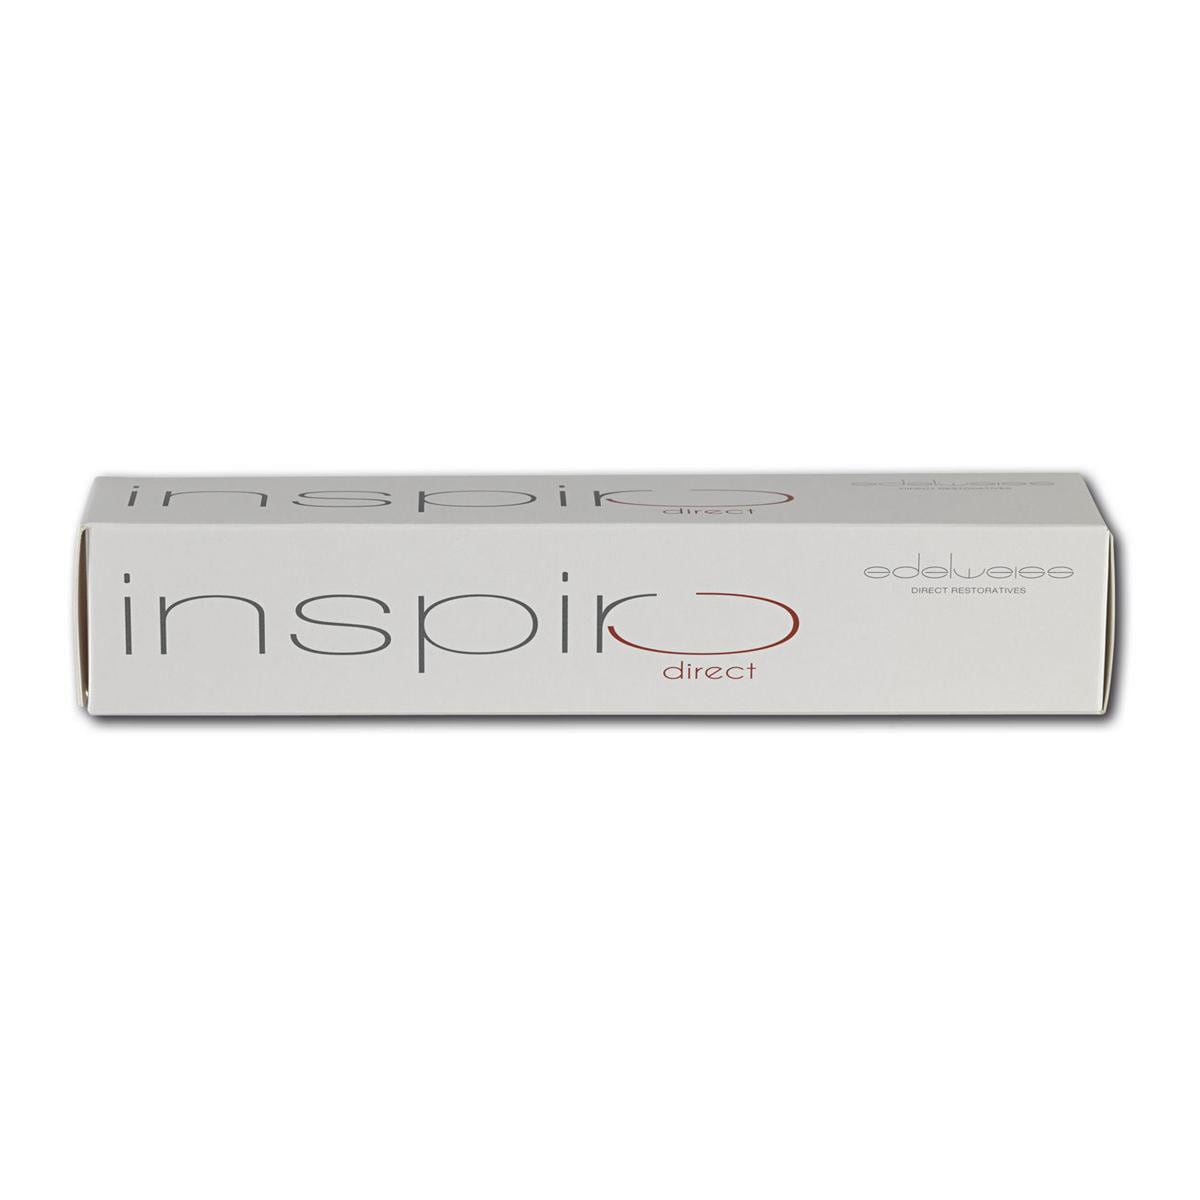 Inspiro - spuitjes - Body i0, Spuit, 3 g